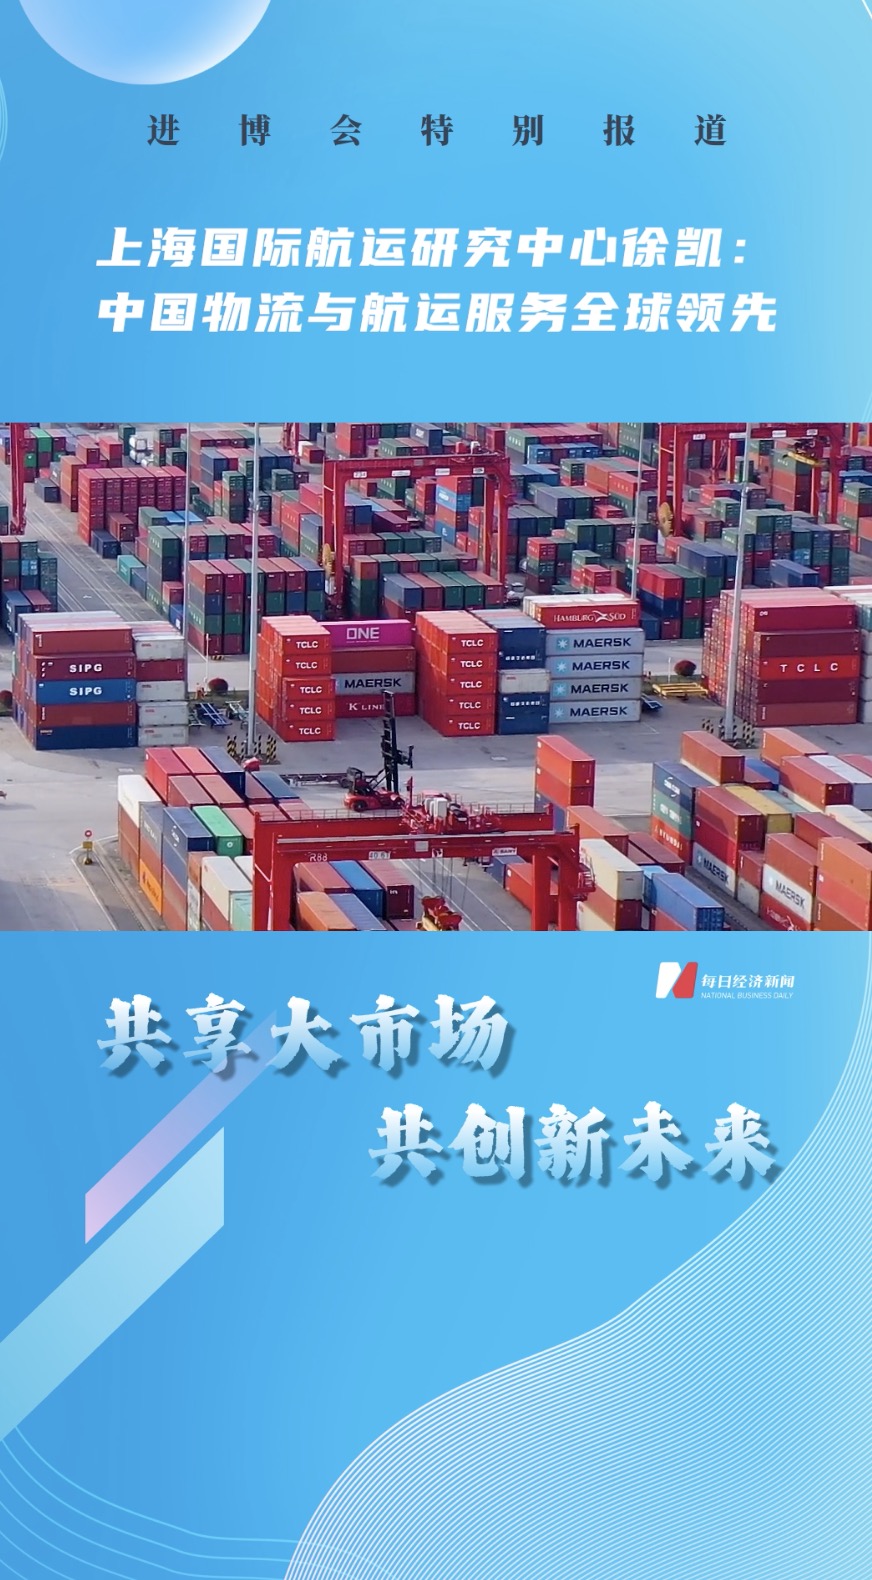 上海國際航運研究中心徐凱：中國物流與航運服務全球領先